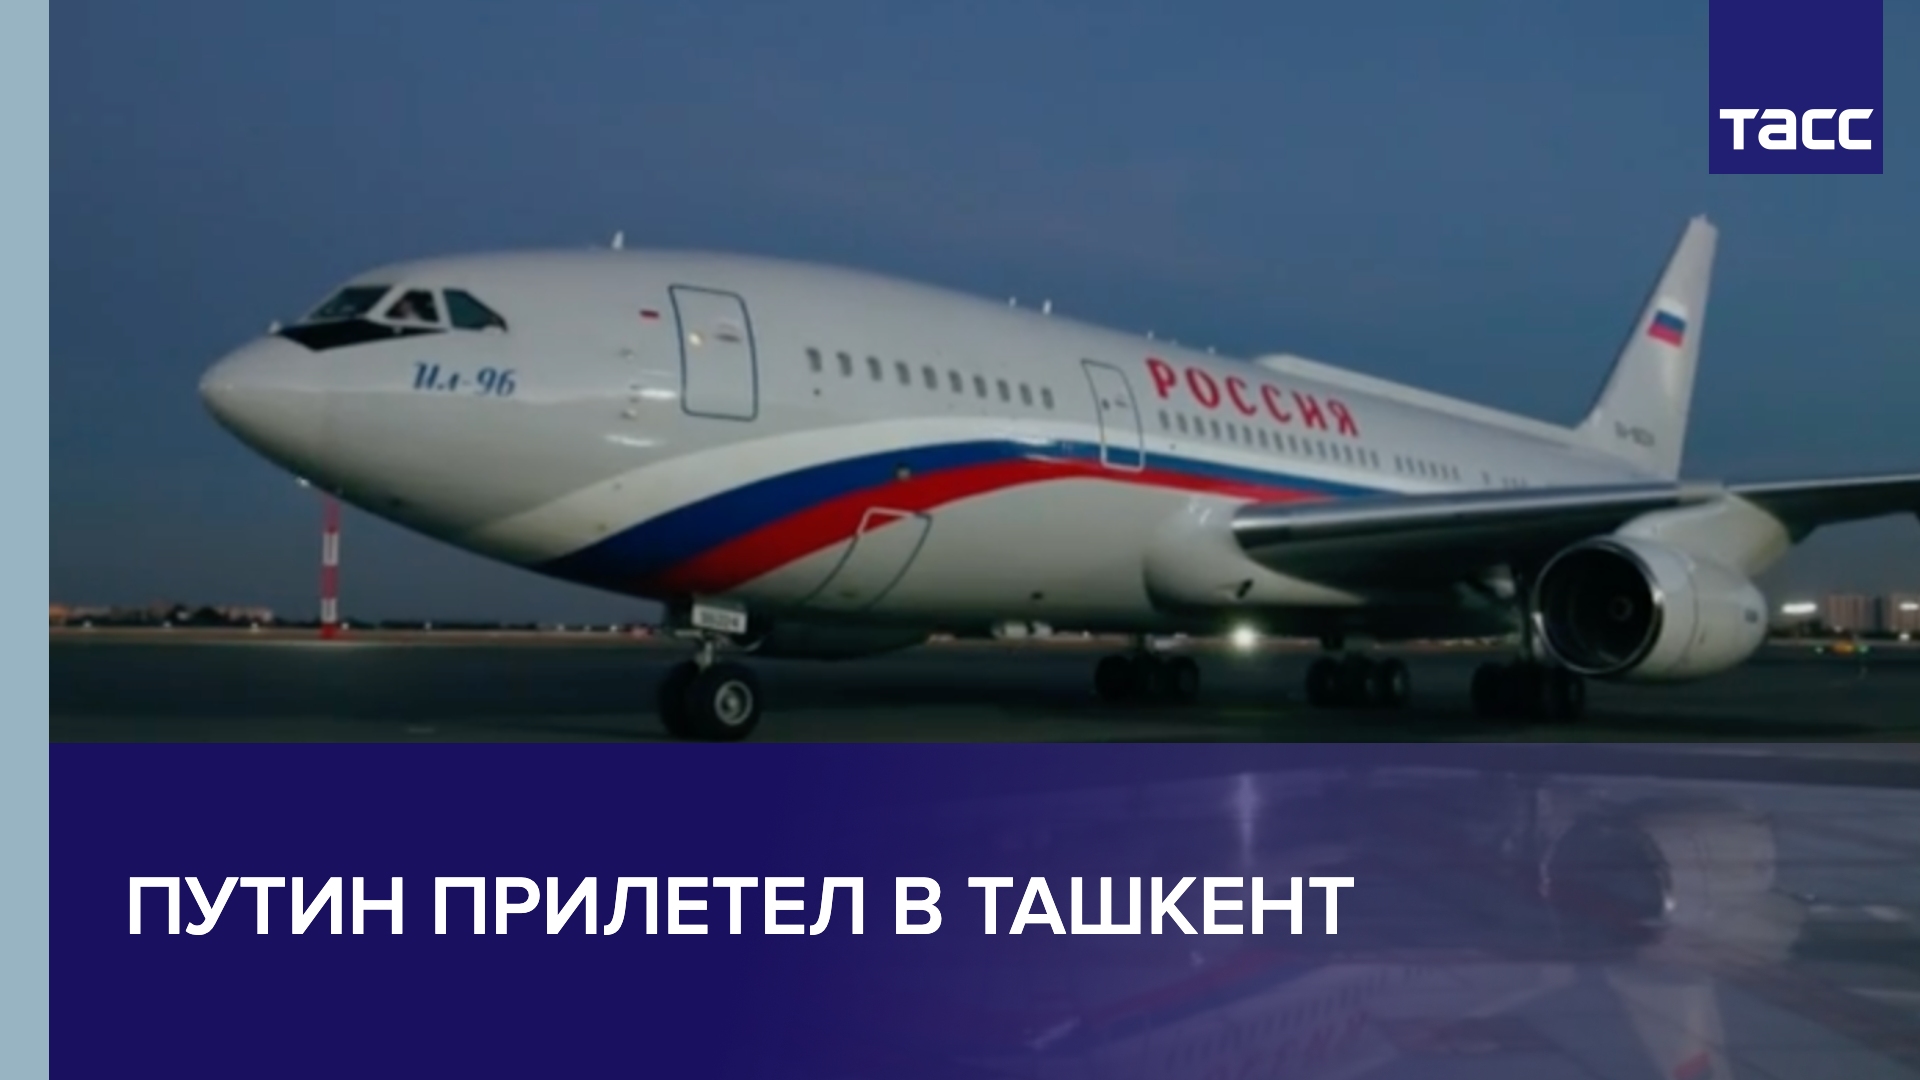 Путин прилетел в Ташкент